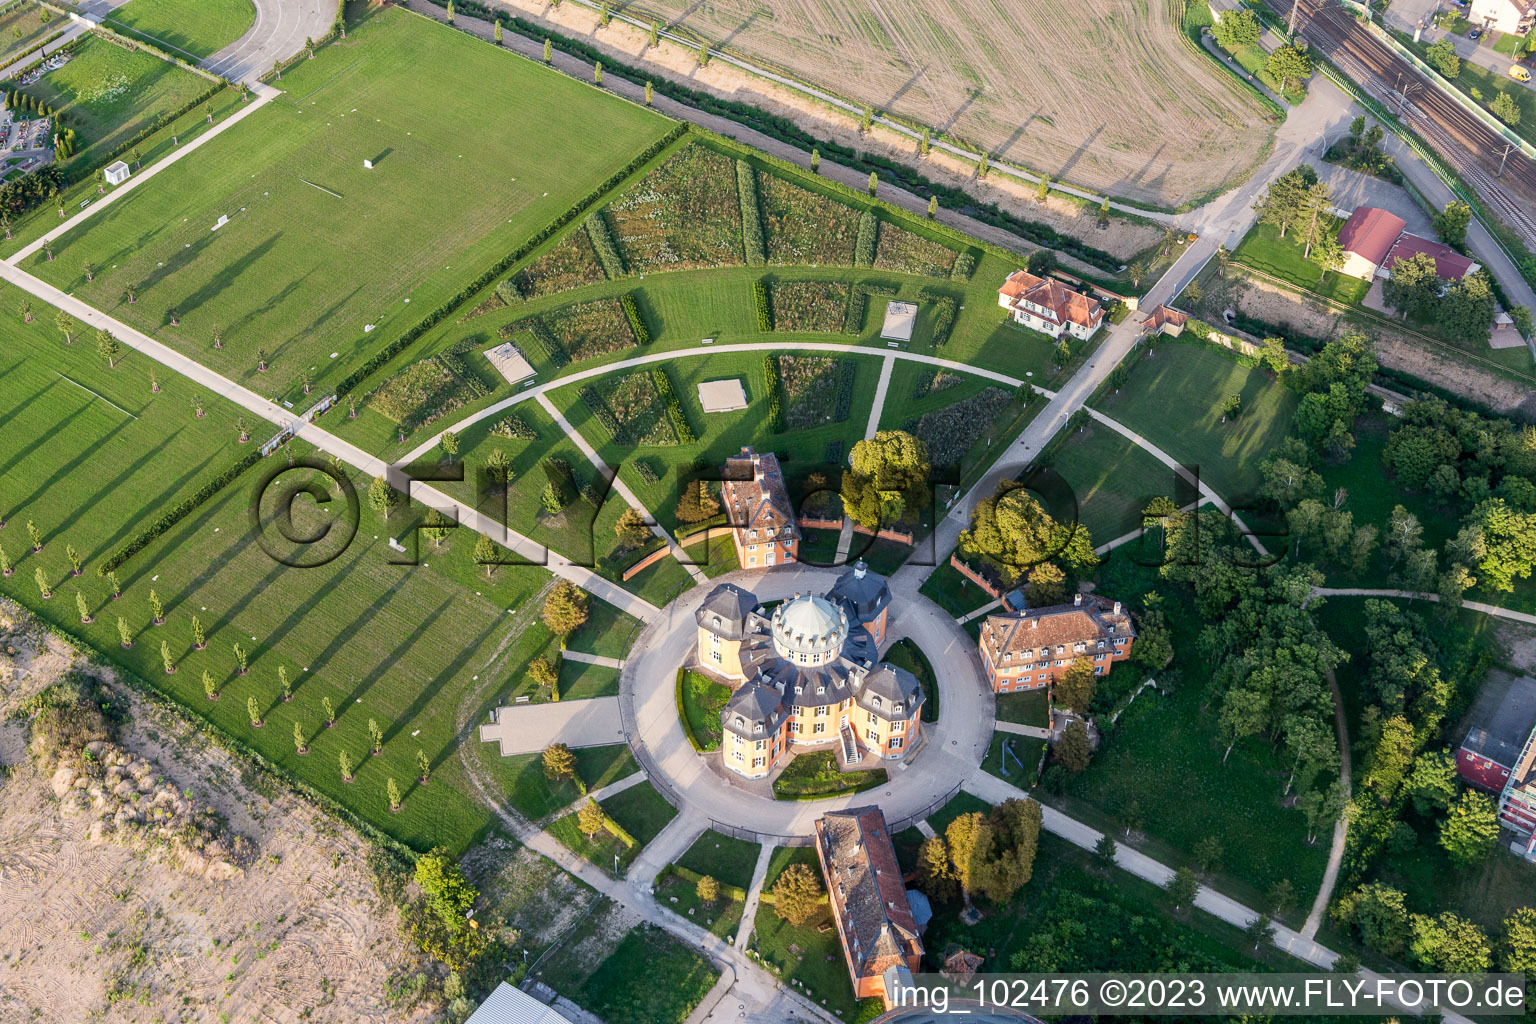 Waghäusel im Bundesland Baden-Württemberg, Deutschland von der Drohne aus gesehen